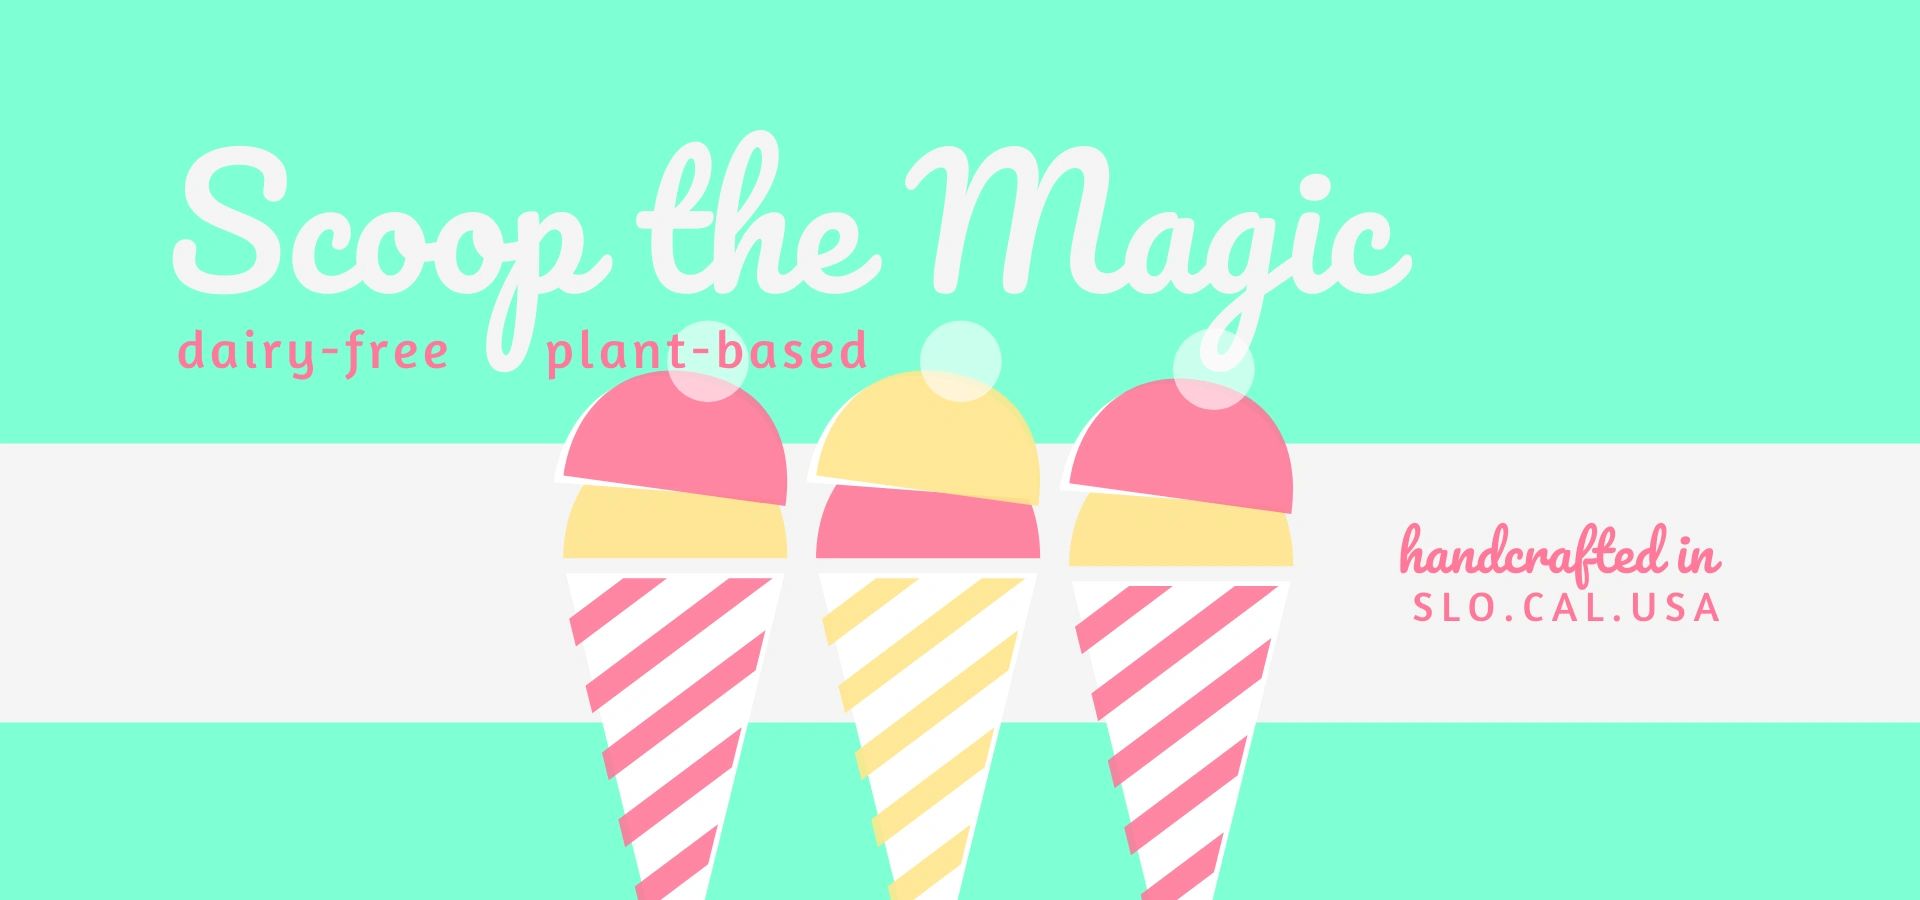 magic ice cream scoop